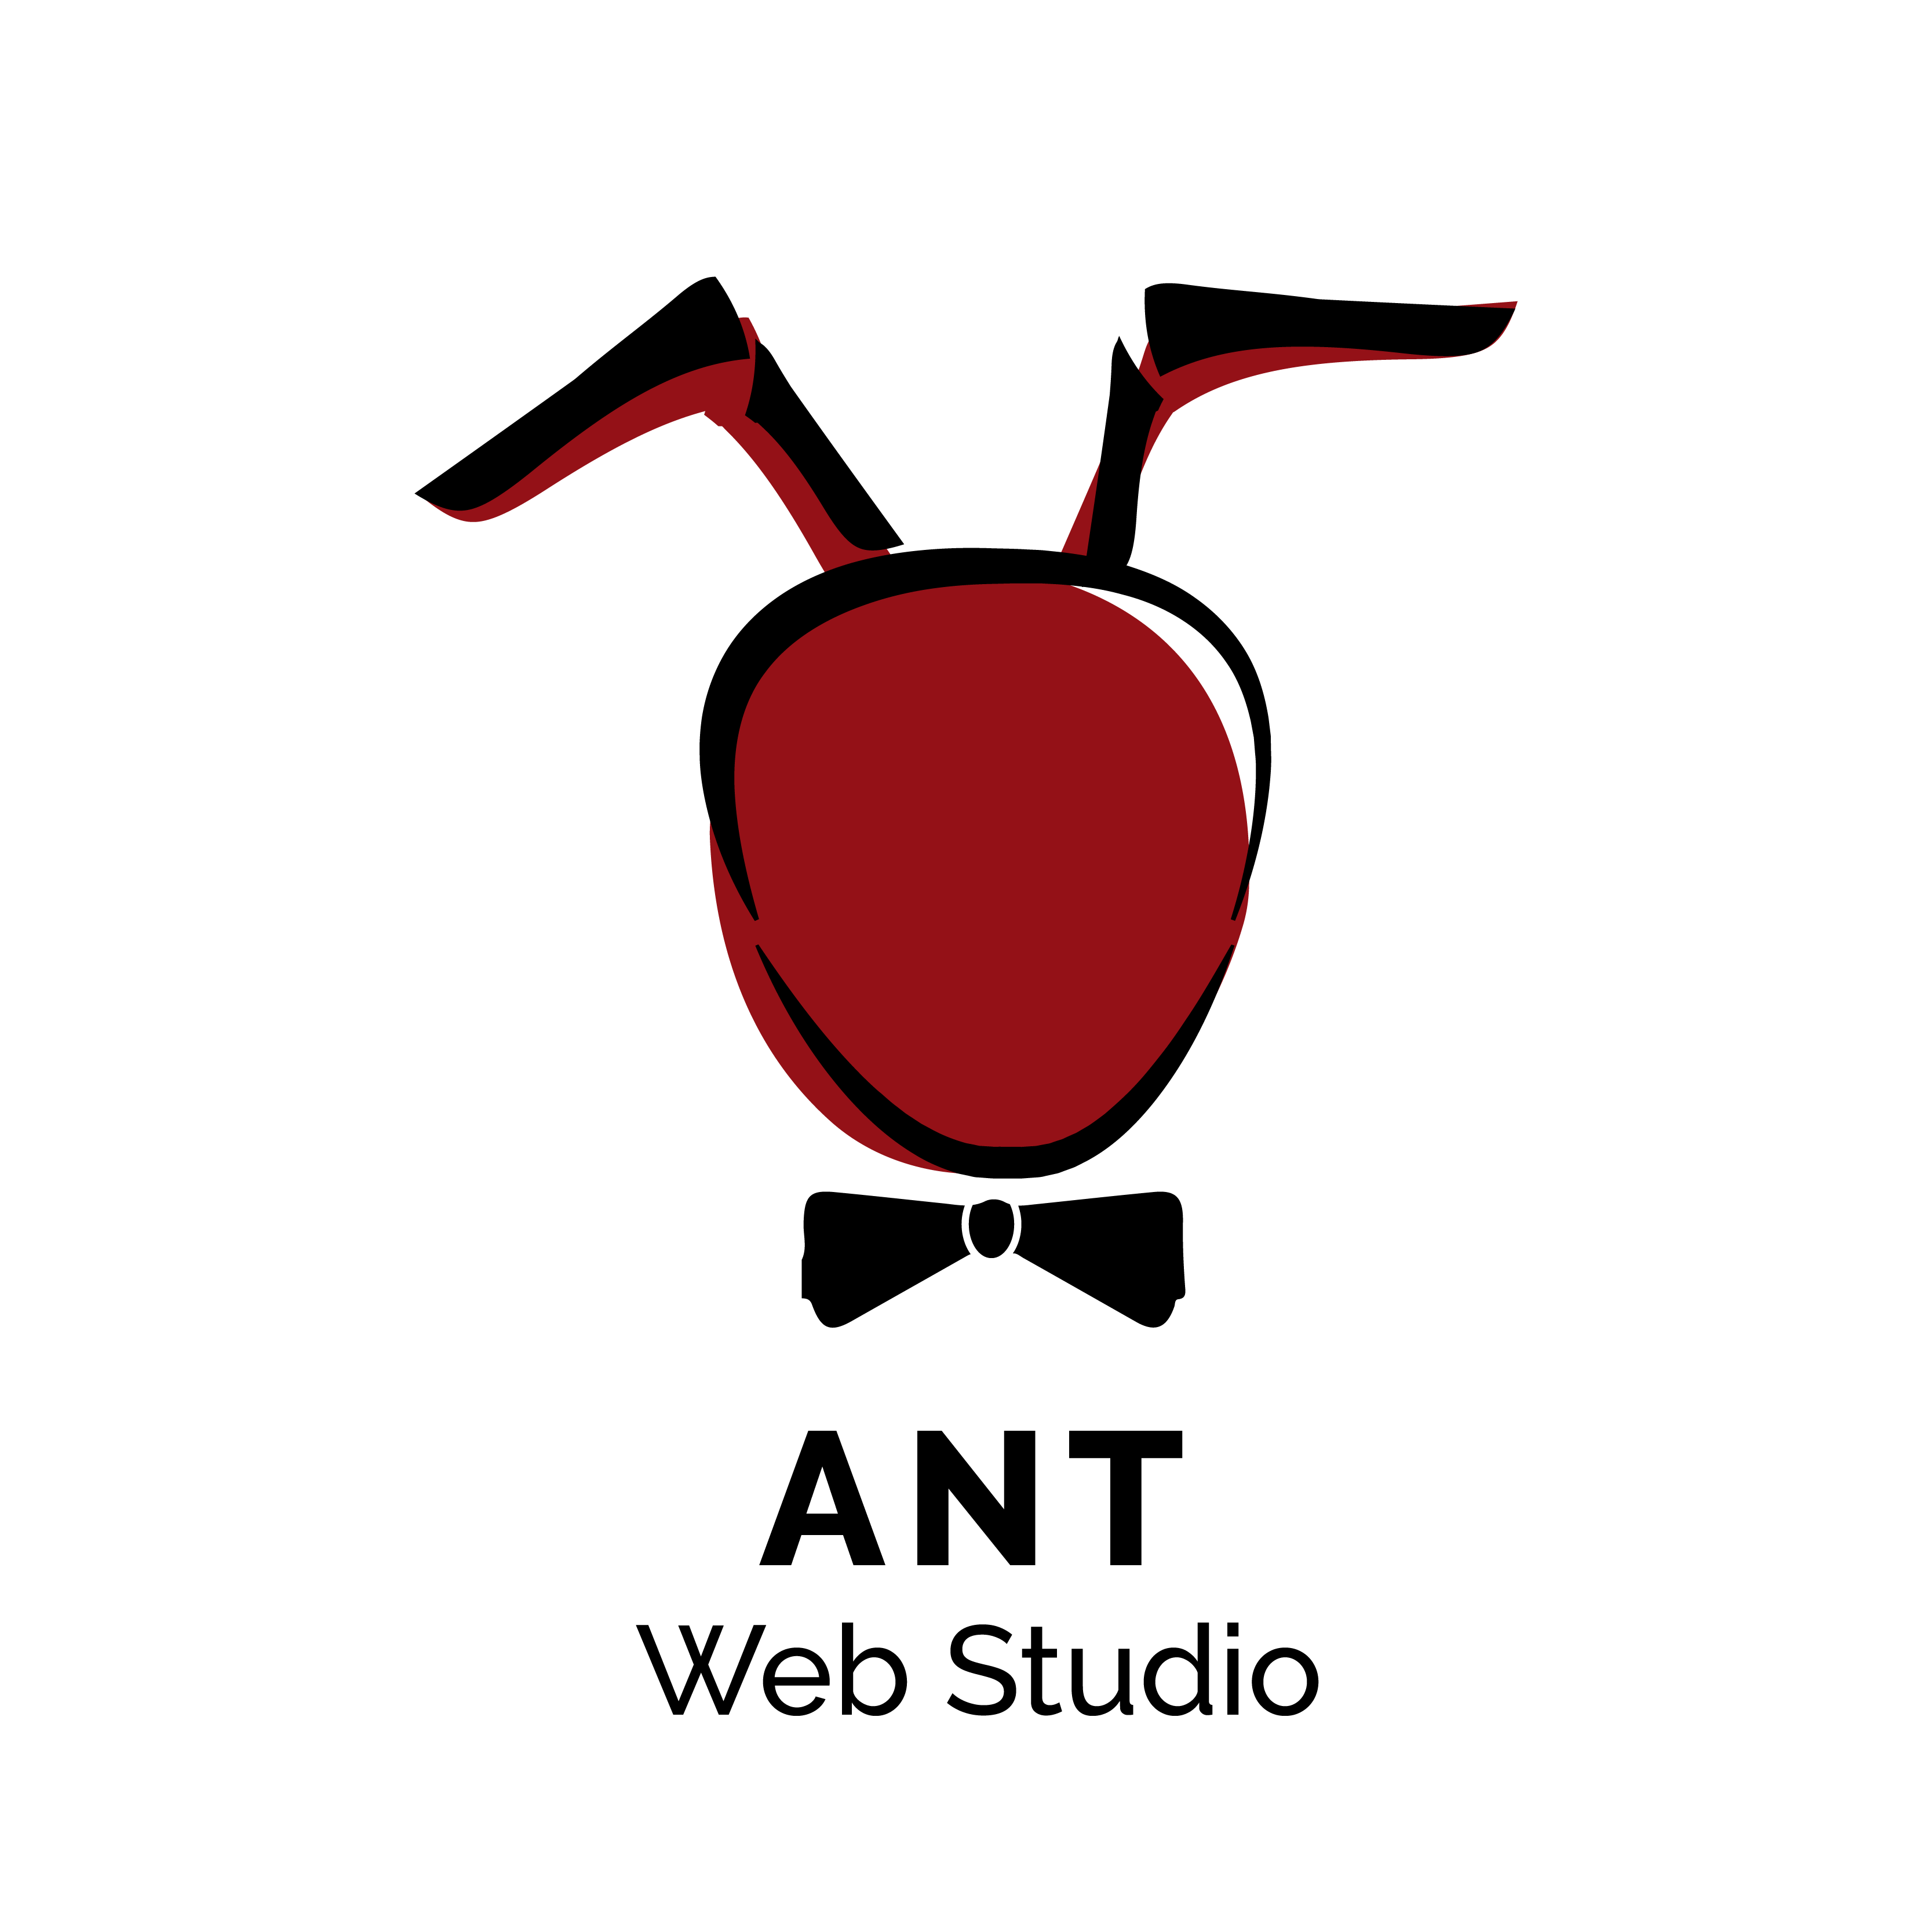 Ant Web Studio logo